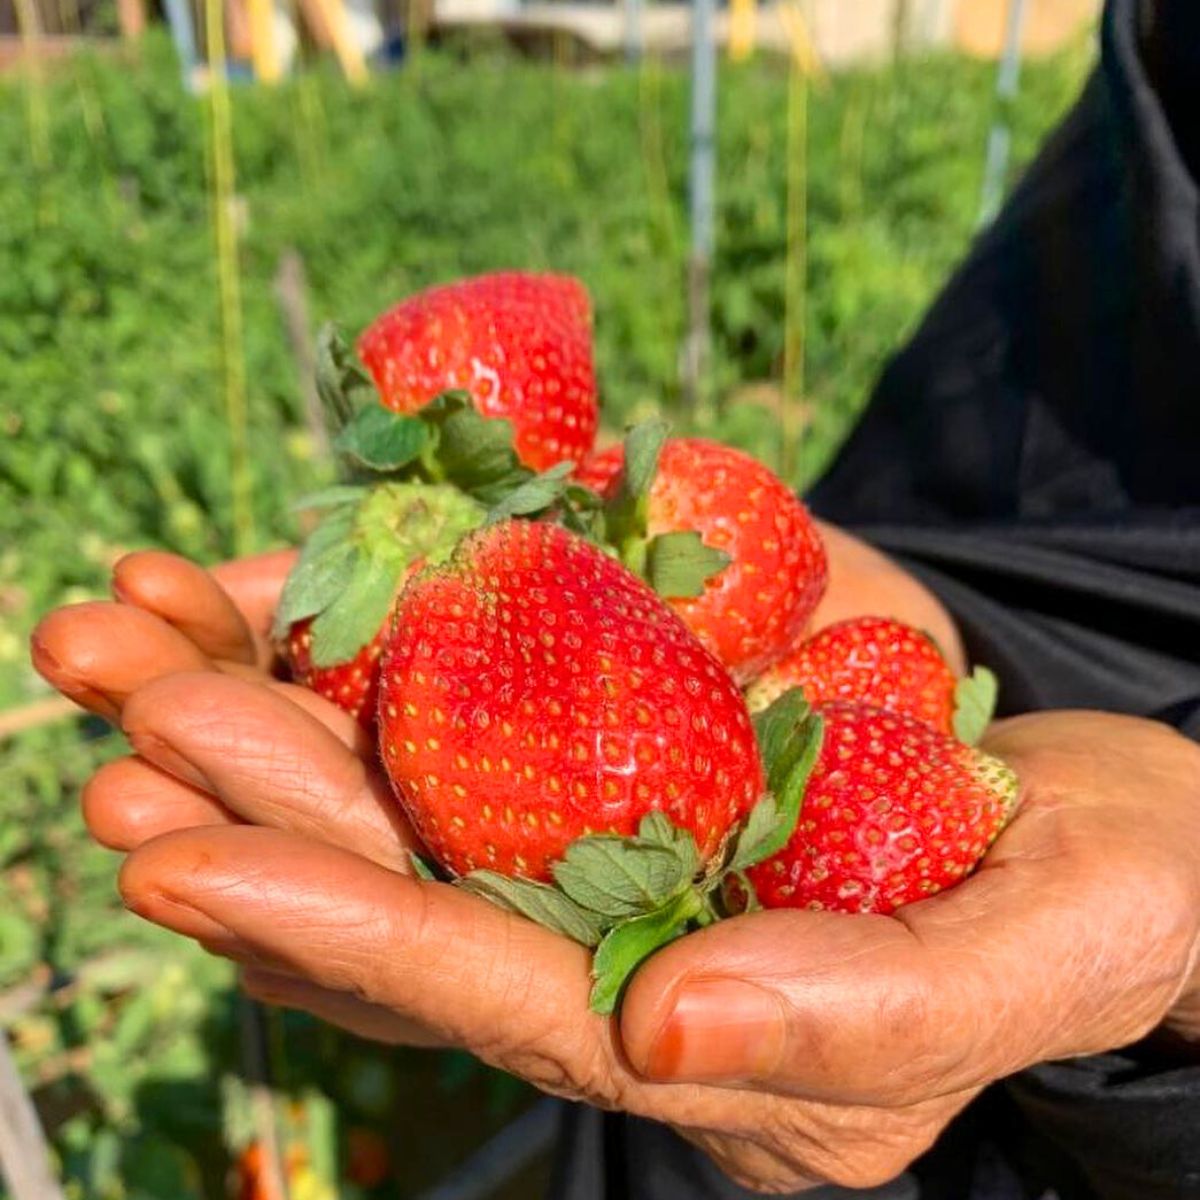 Strawberry production in Dubai